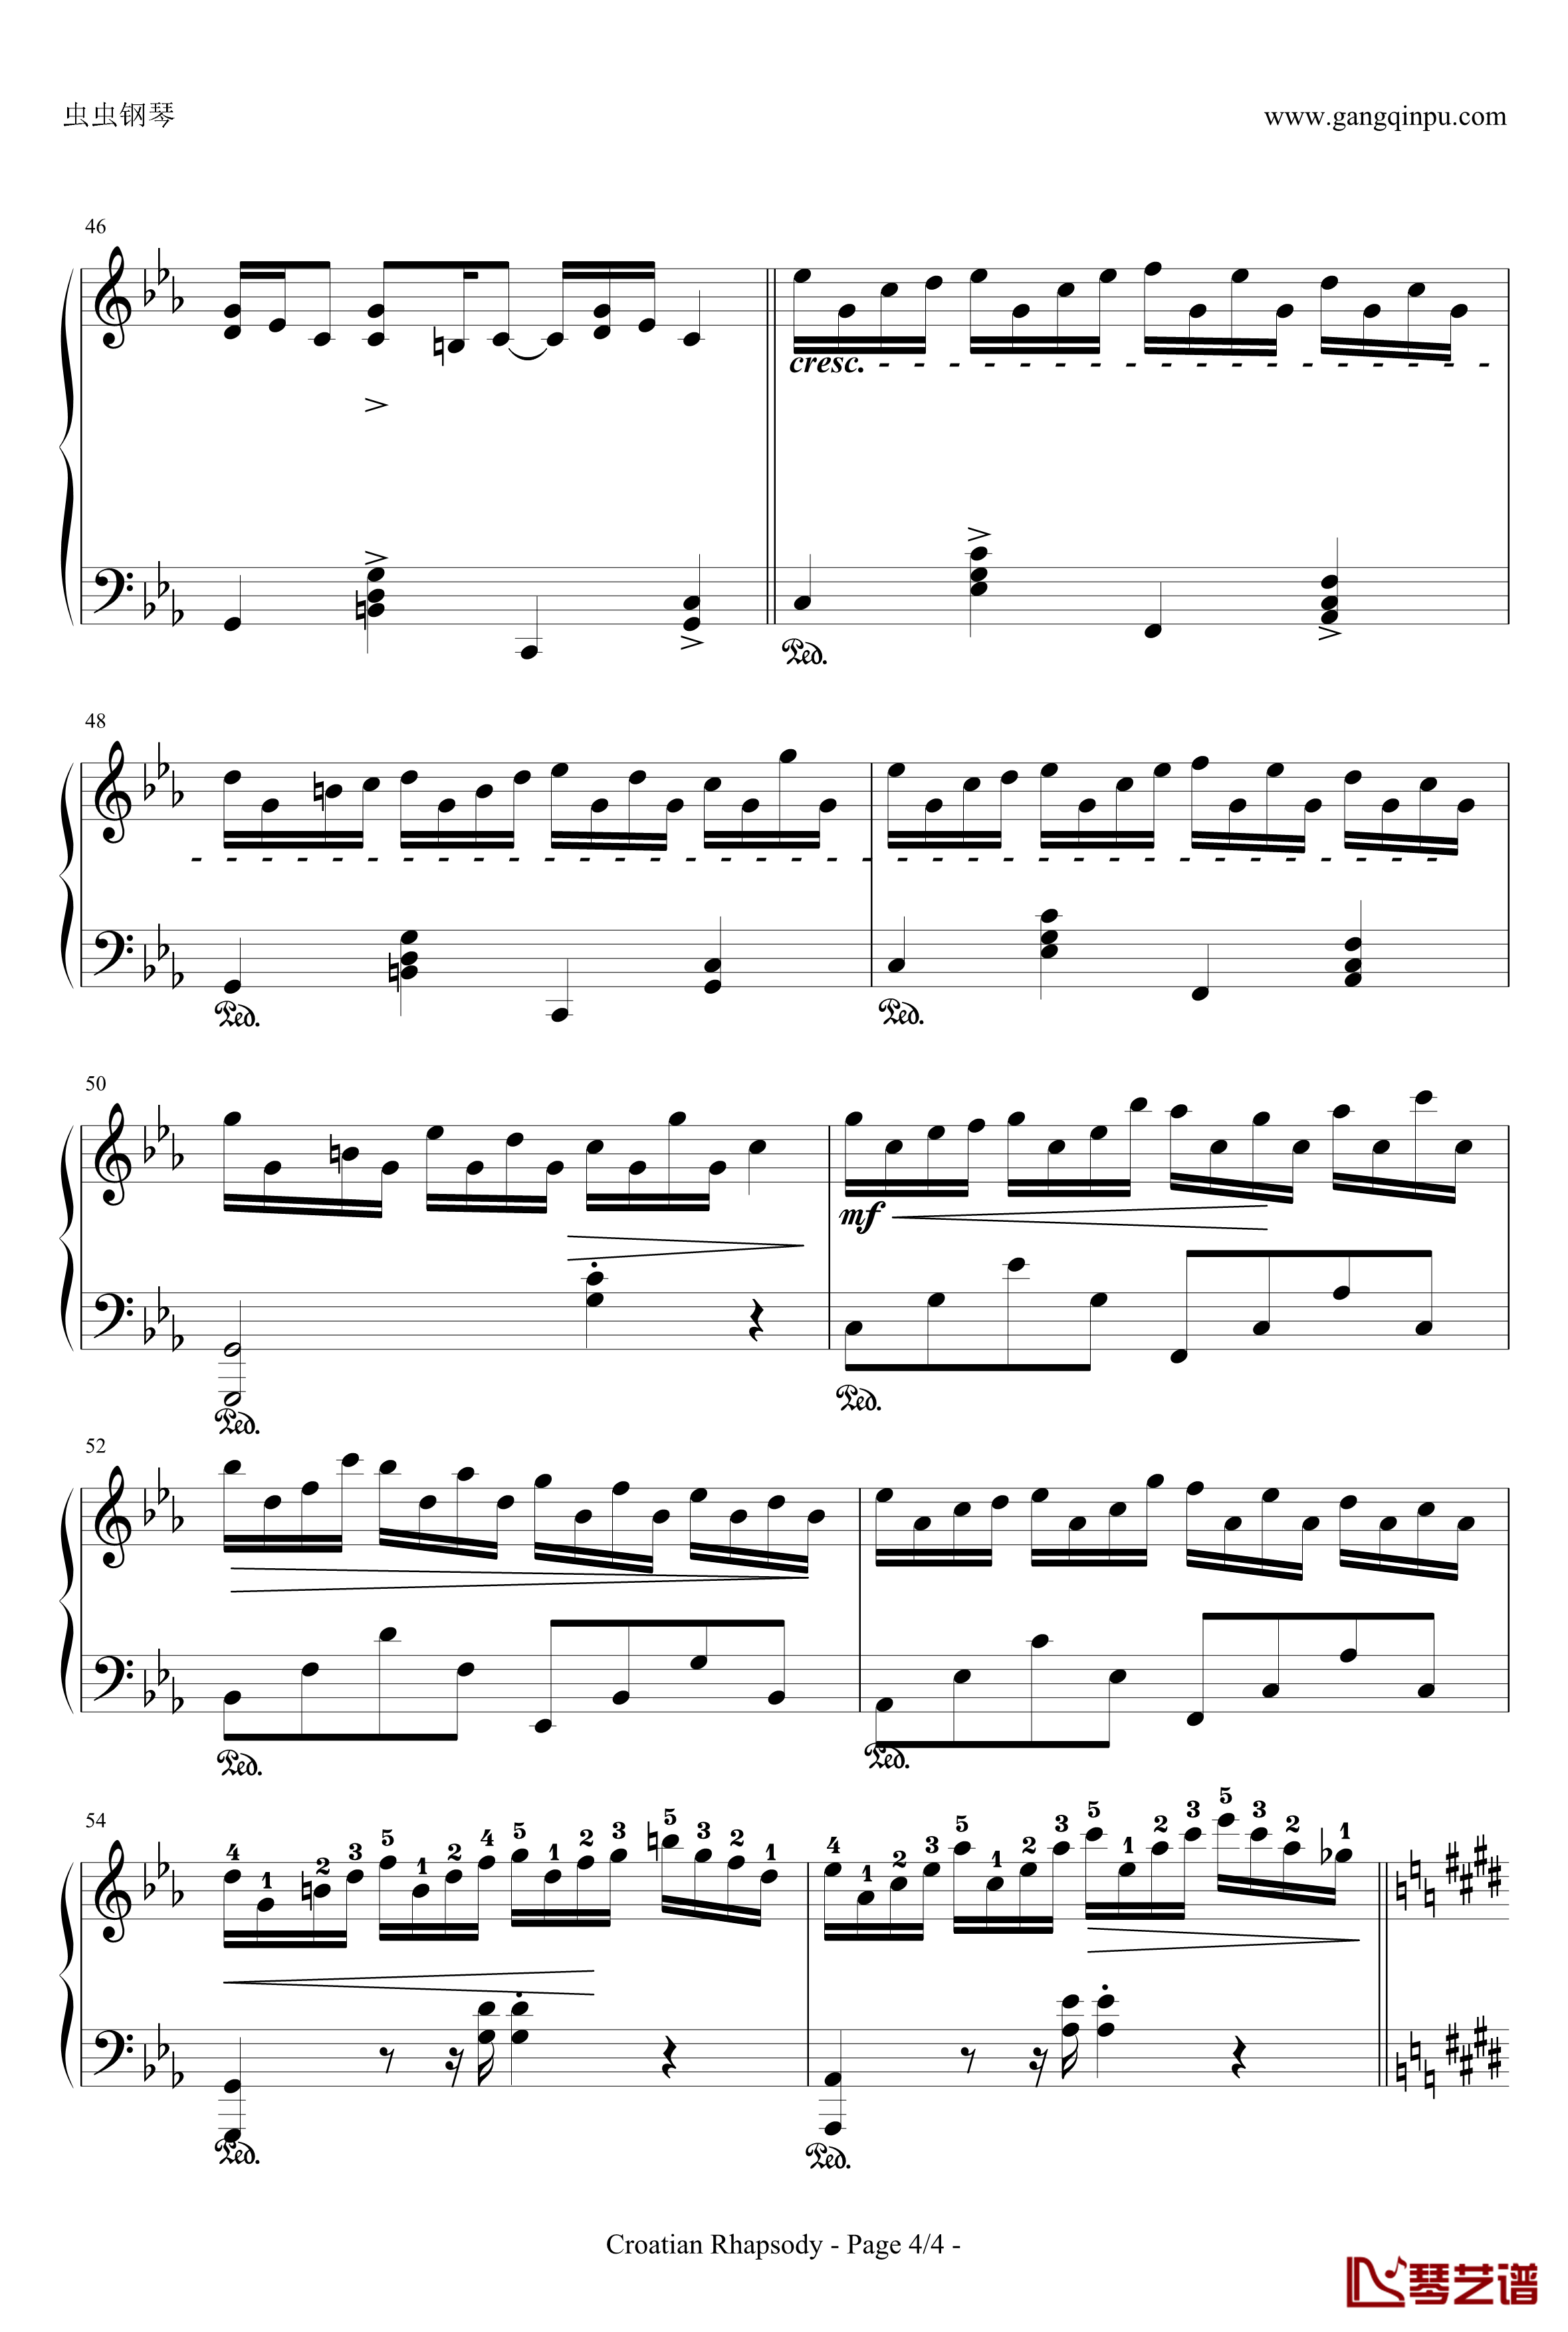 克罗地亚狂想曲钢琴谱-带指法简易版学生最爱-马克西姆-Maksim·Mrvica4